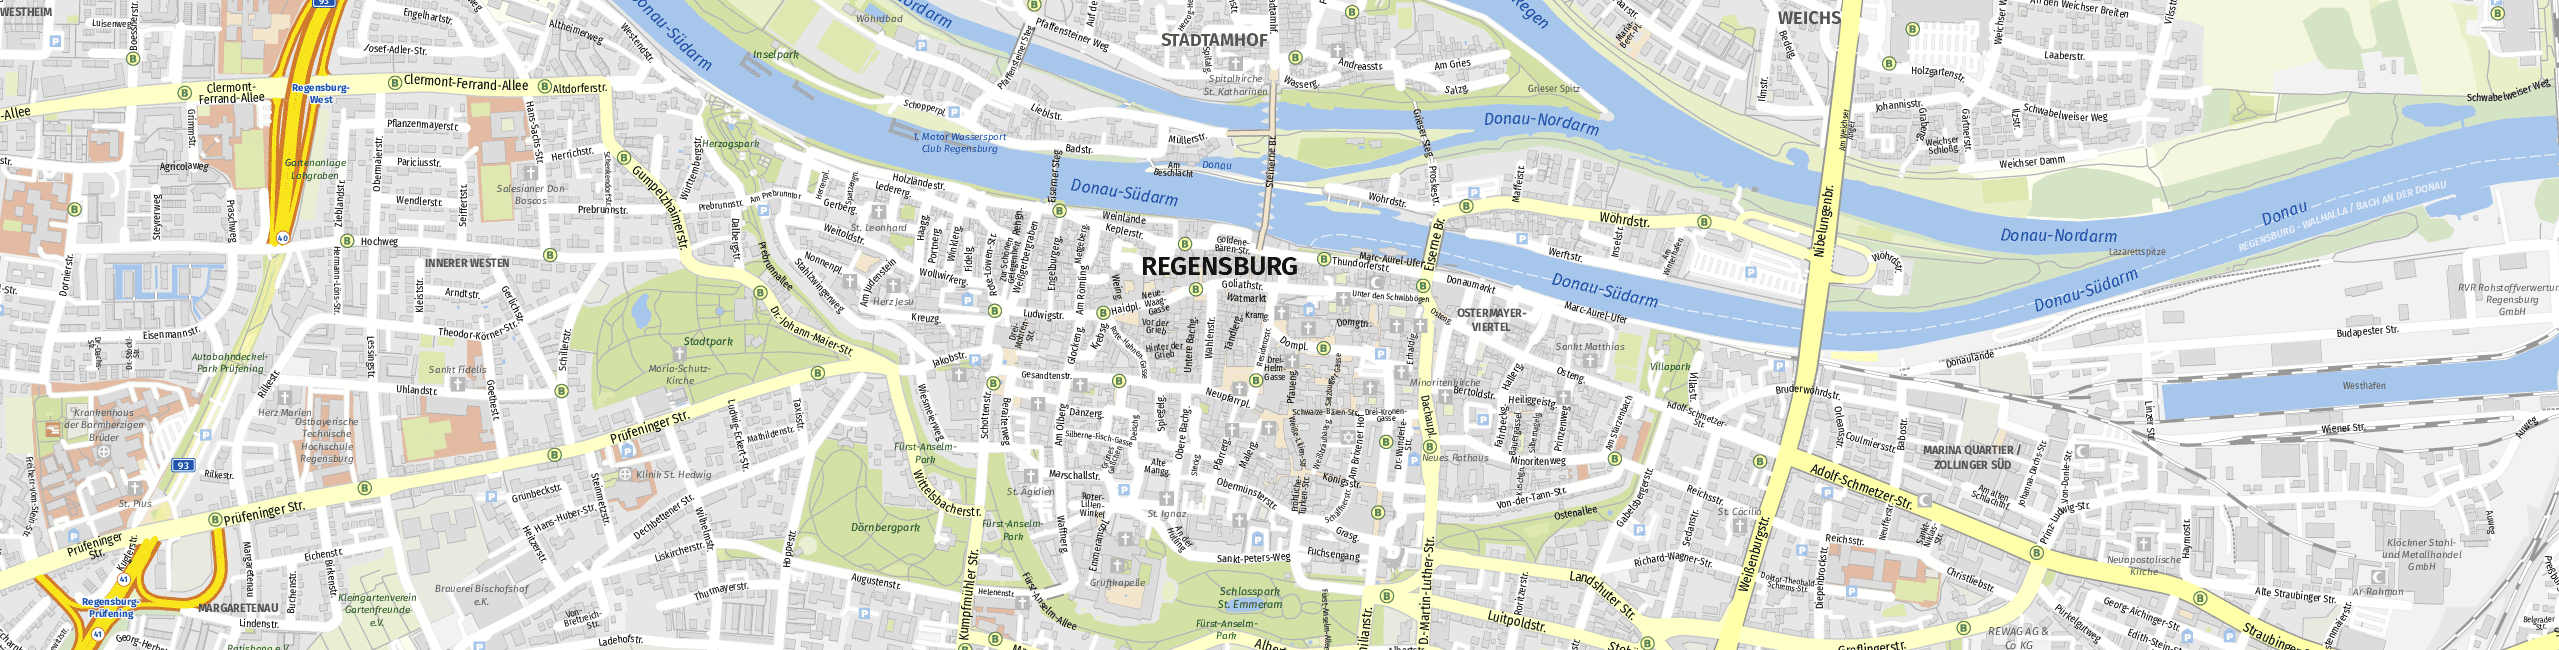 Stadtplan Regensburg zum Downloaden.